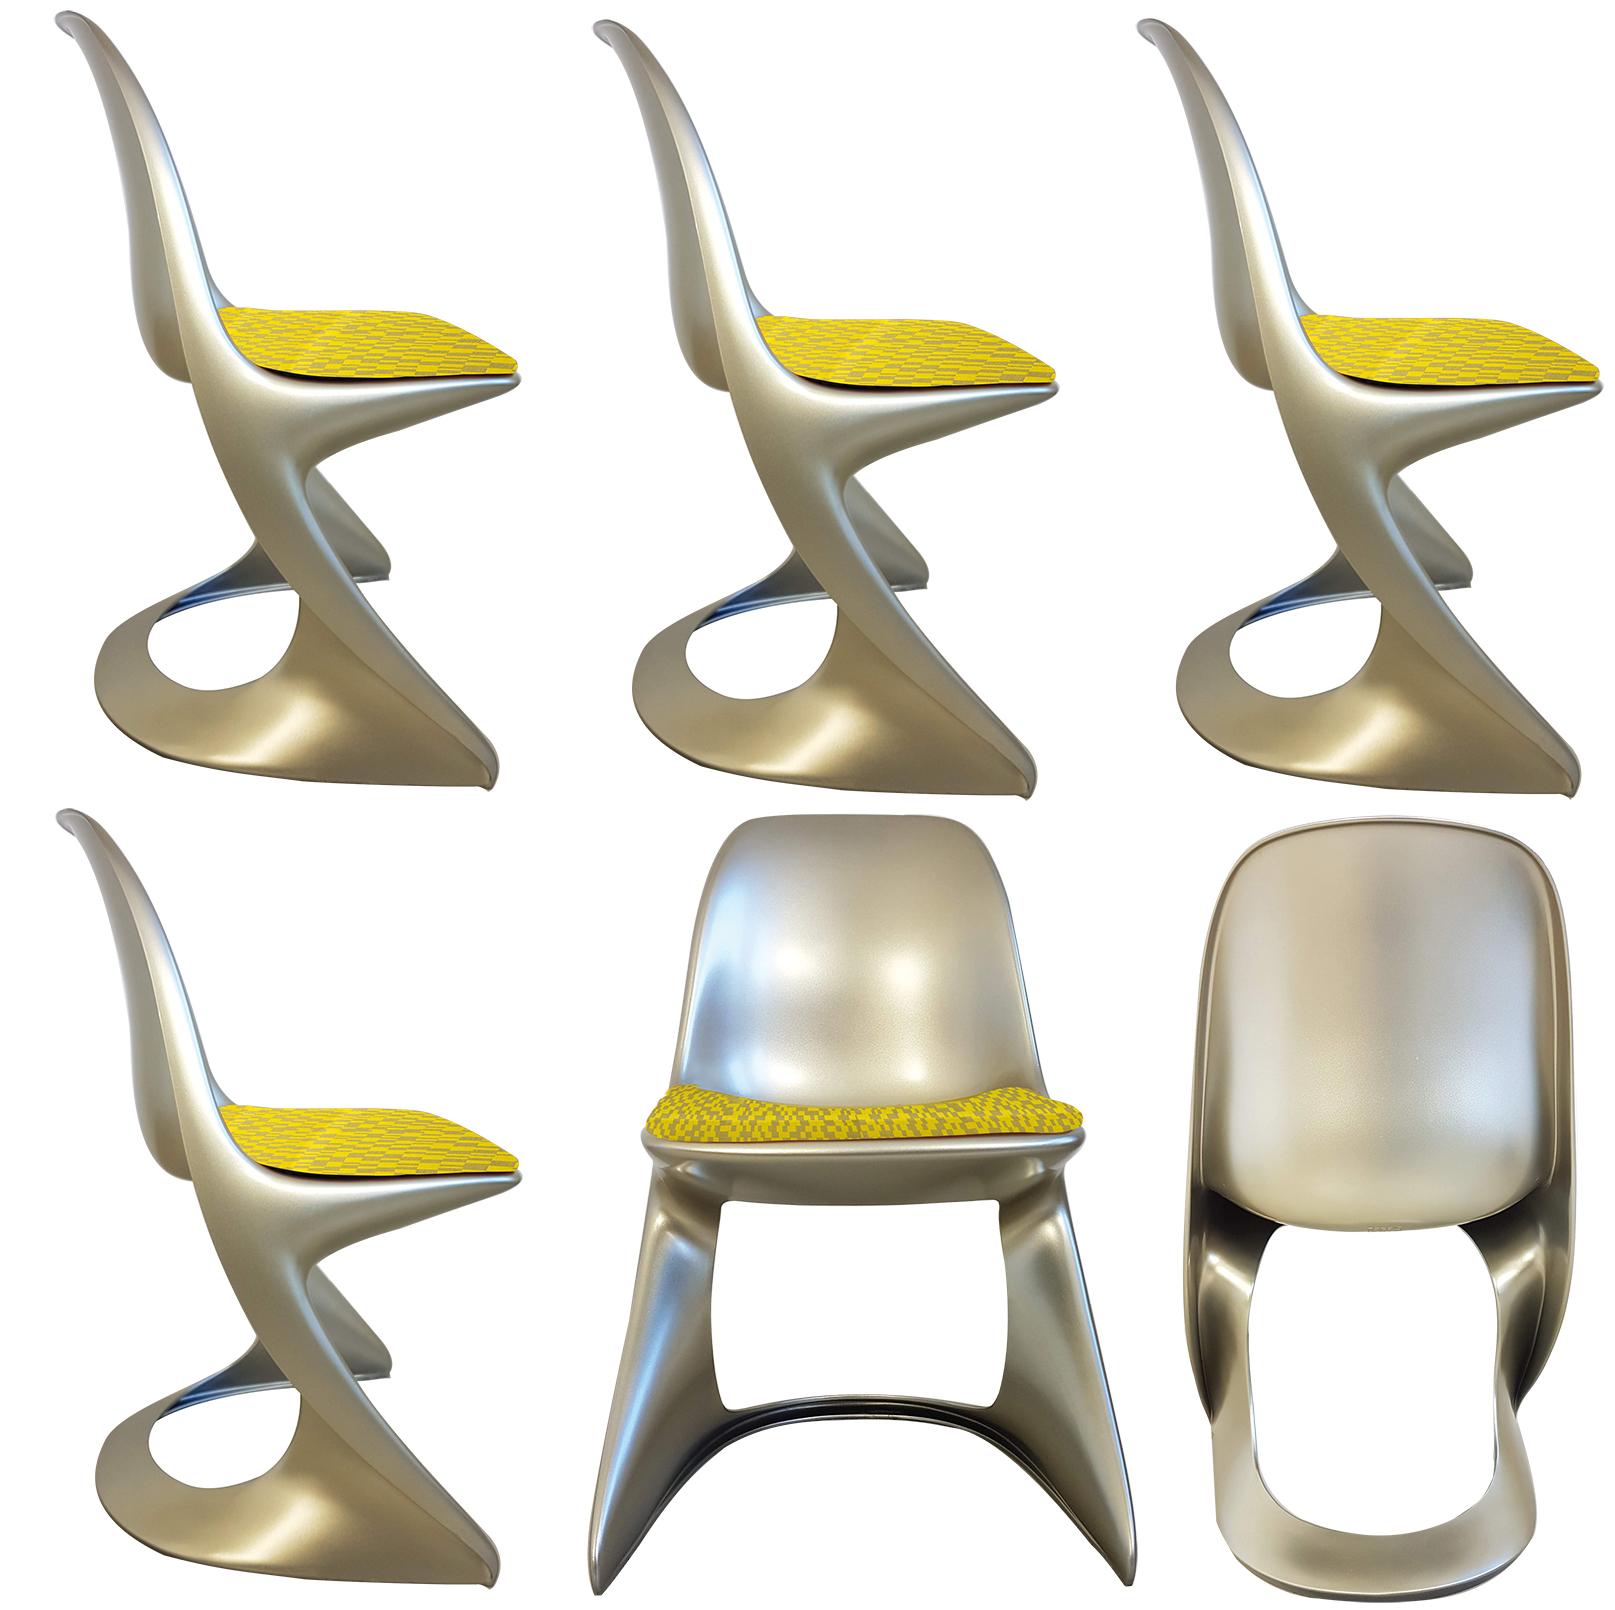 Ungewöhnliche Reihe von Ostergaard Polyethylen in lackierter Metallic-Farbe durch Rotationsguss gemacht fixiert (Innen- / Außenbereich) Stühle mit neuen Sitzen aus geometrischen gewebten Jacquard-Textil-Stoff 